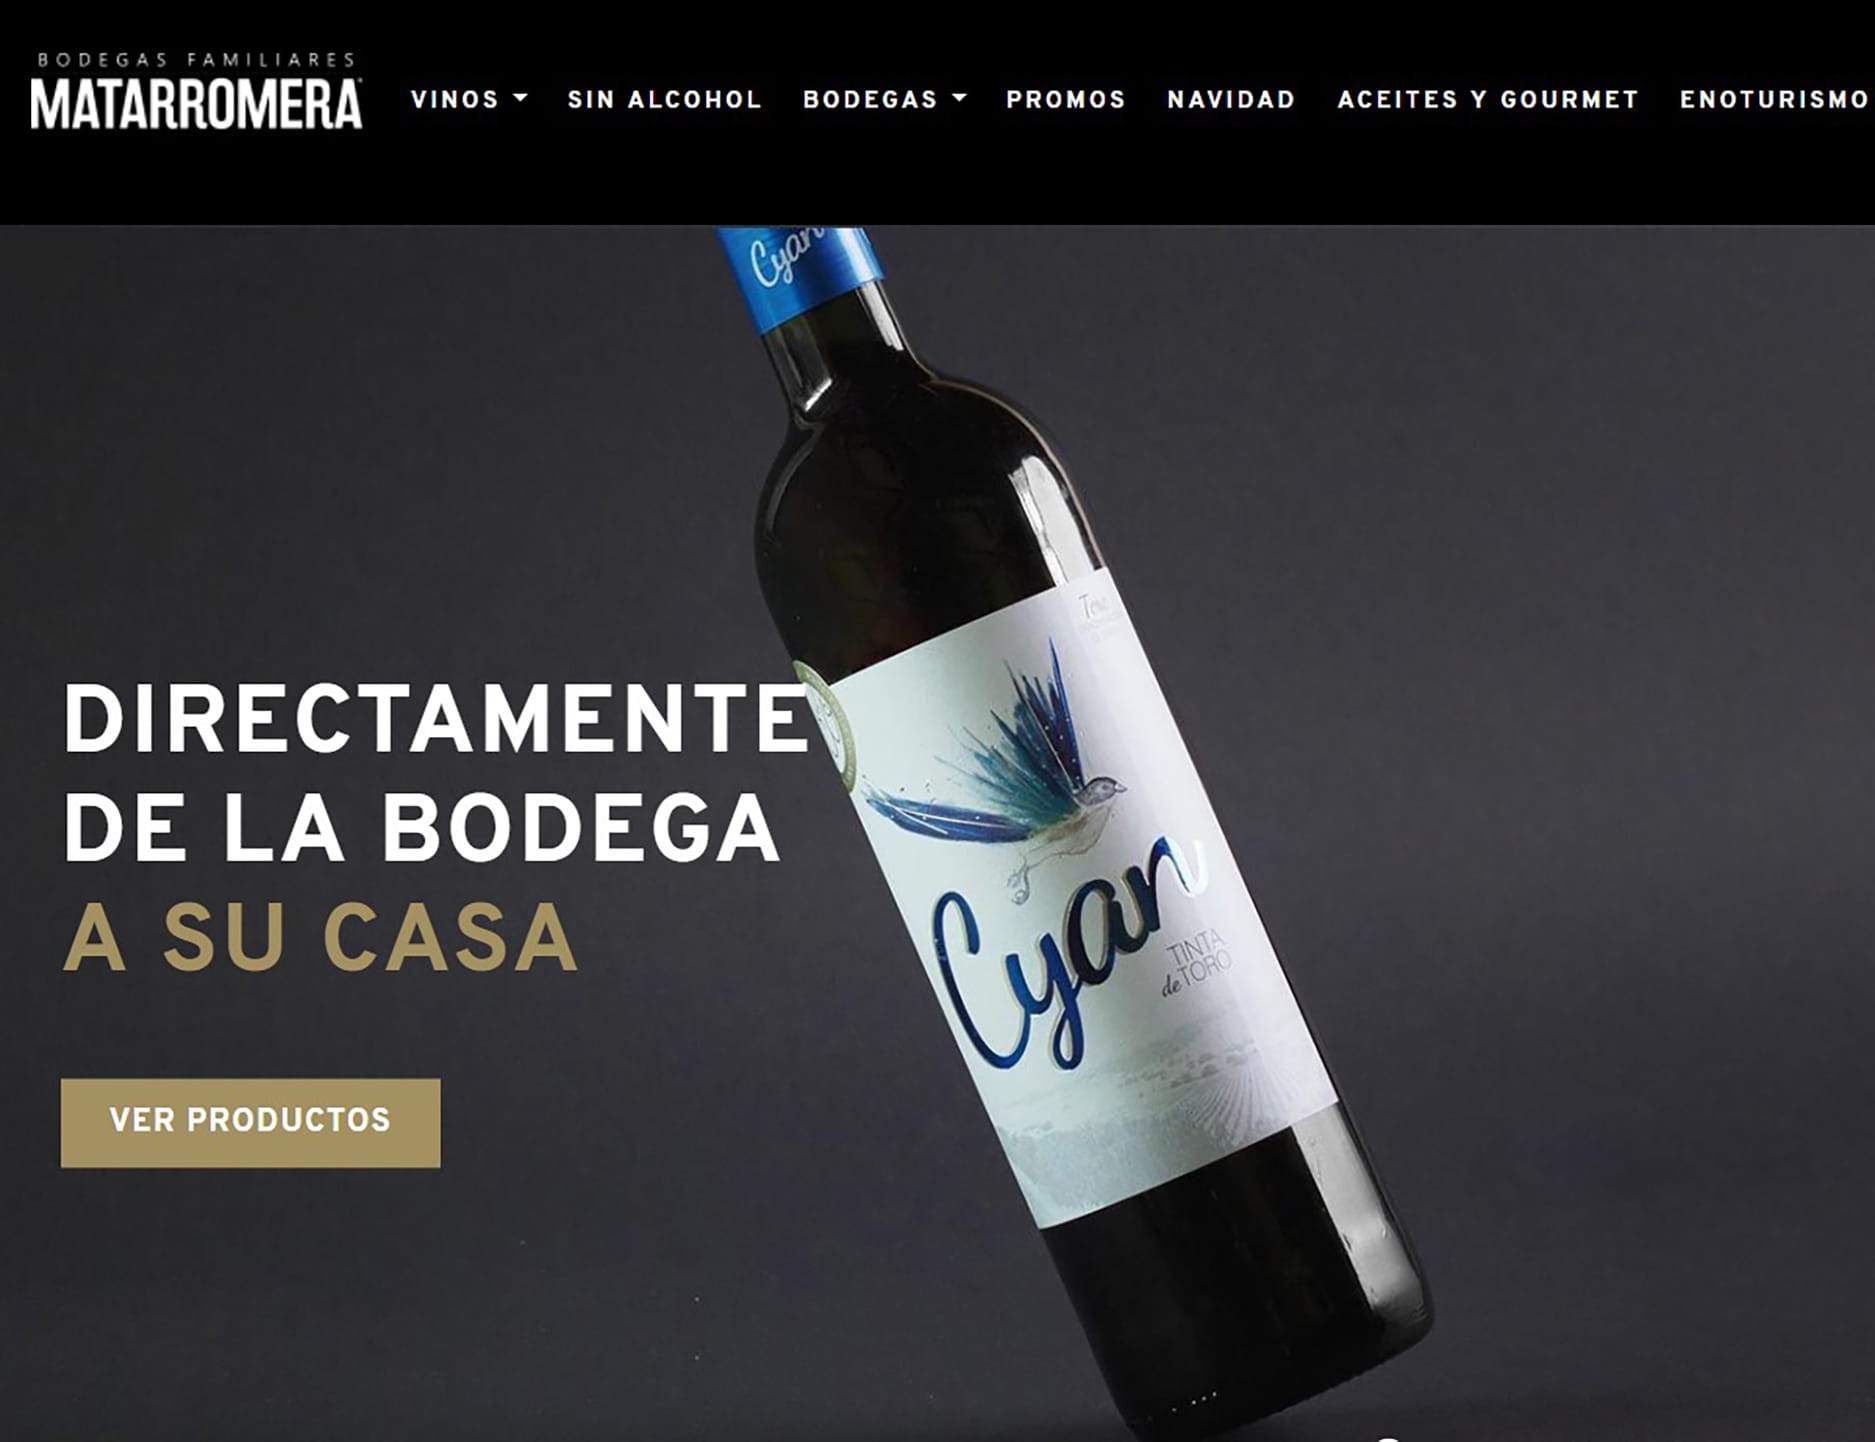 Matarromera integra en su web su nueva tienda online